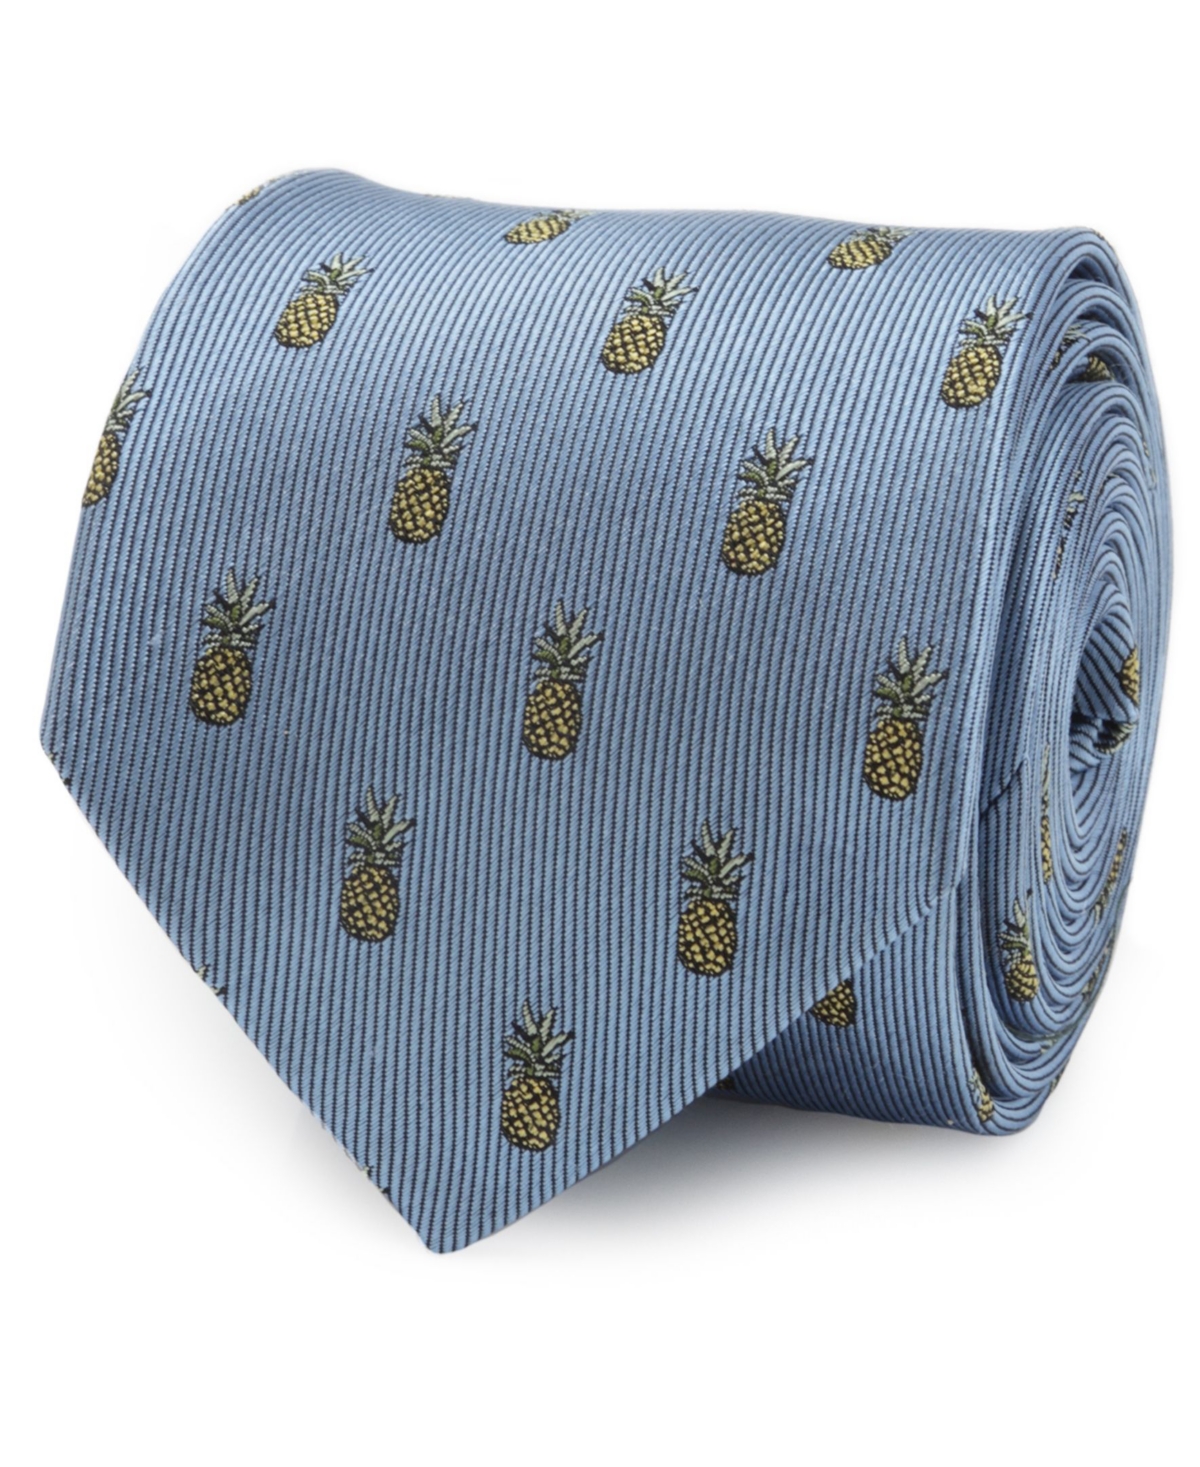 Men's Pineapple Tie - Blue